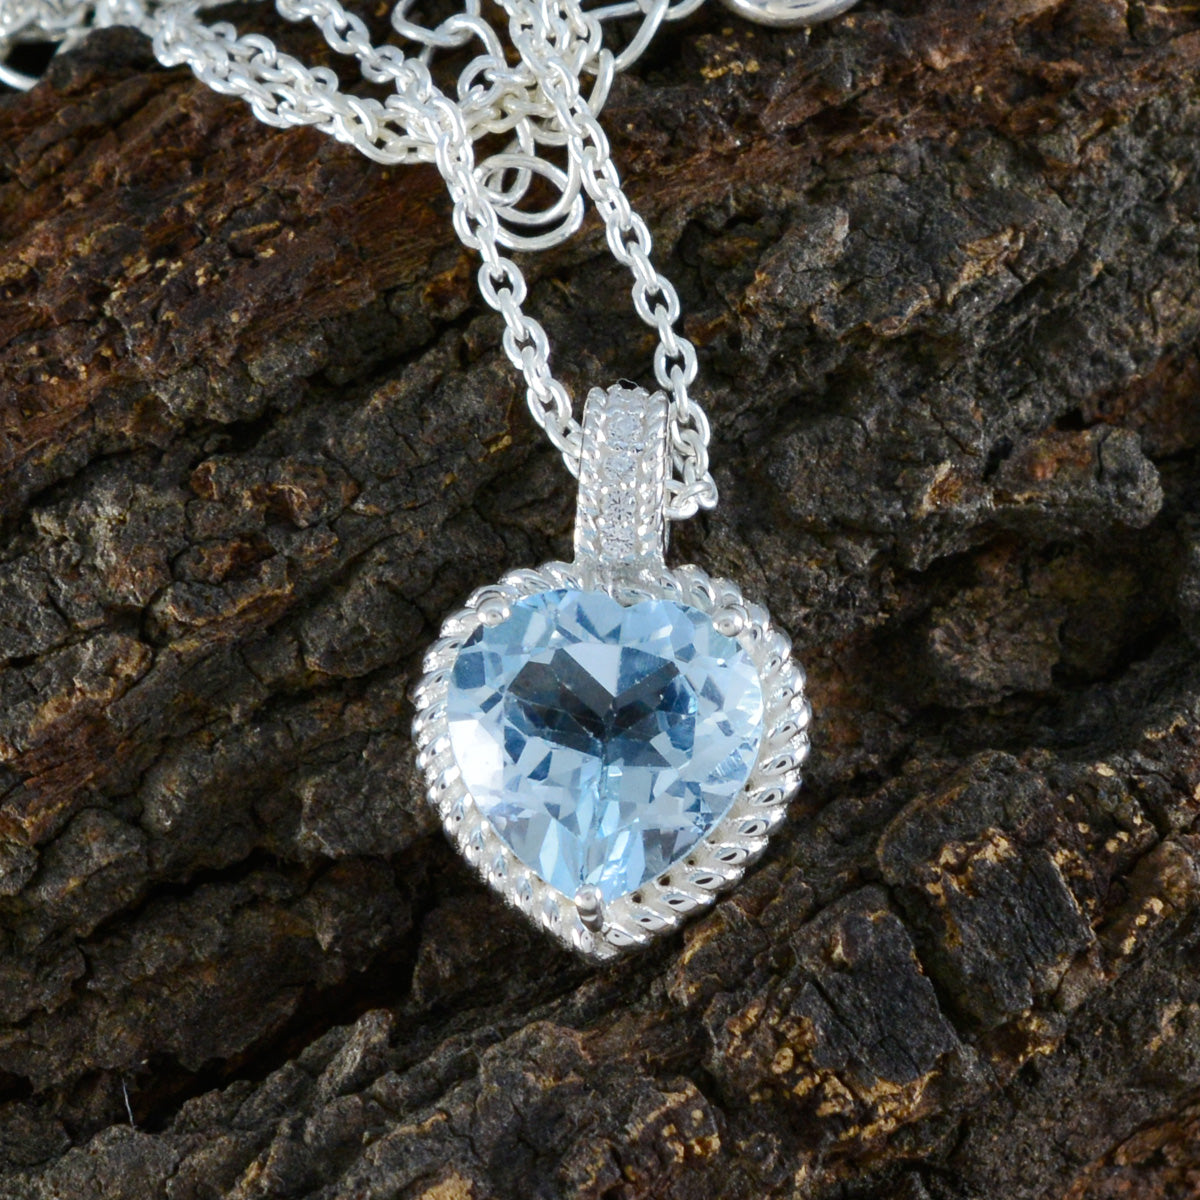 riyo belles pierres précieuses coeur à facettes bleu topaze bleue pendentif en argent massif cadeau pour le dimanche de pâques